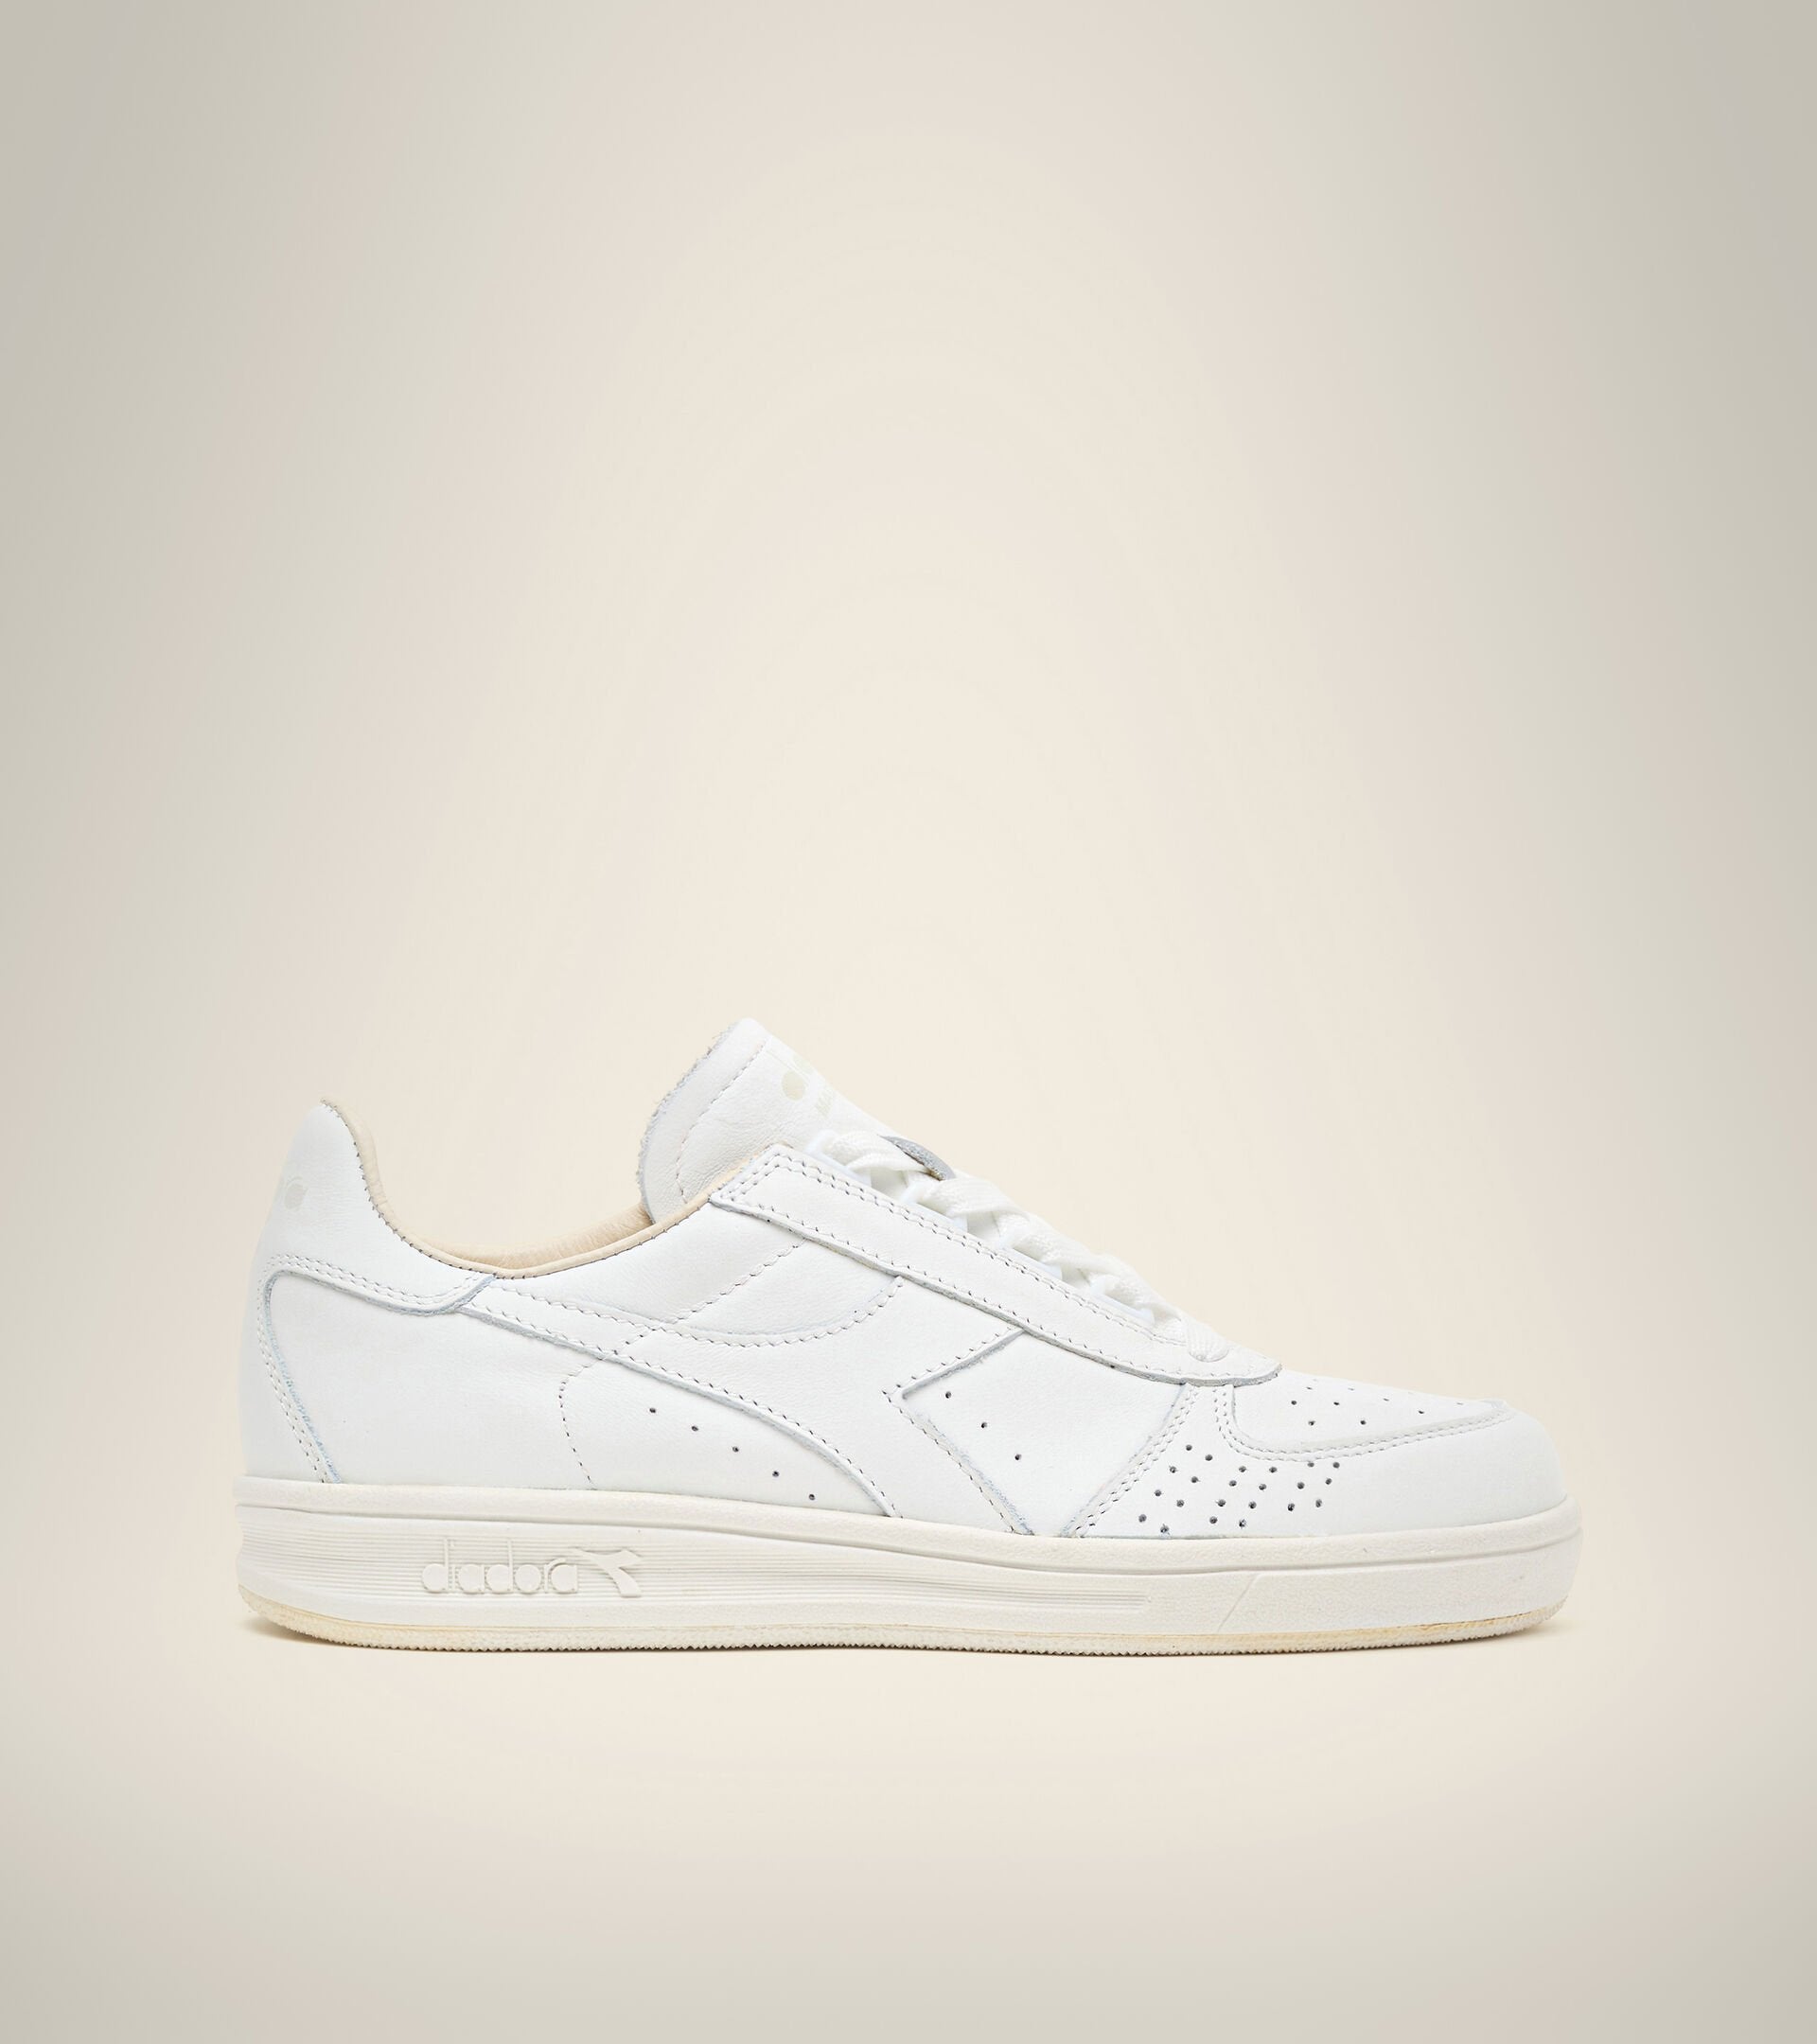 side view of white on white B. elite h italia sport diadora shoe made in italy